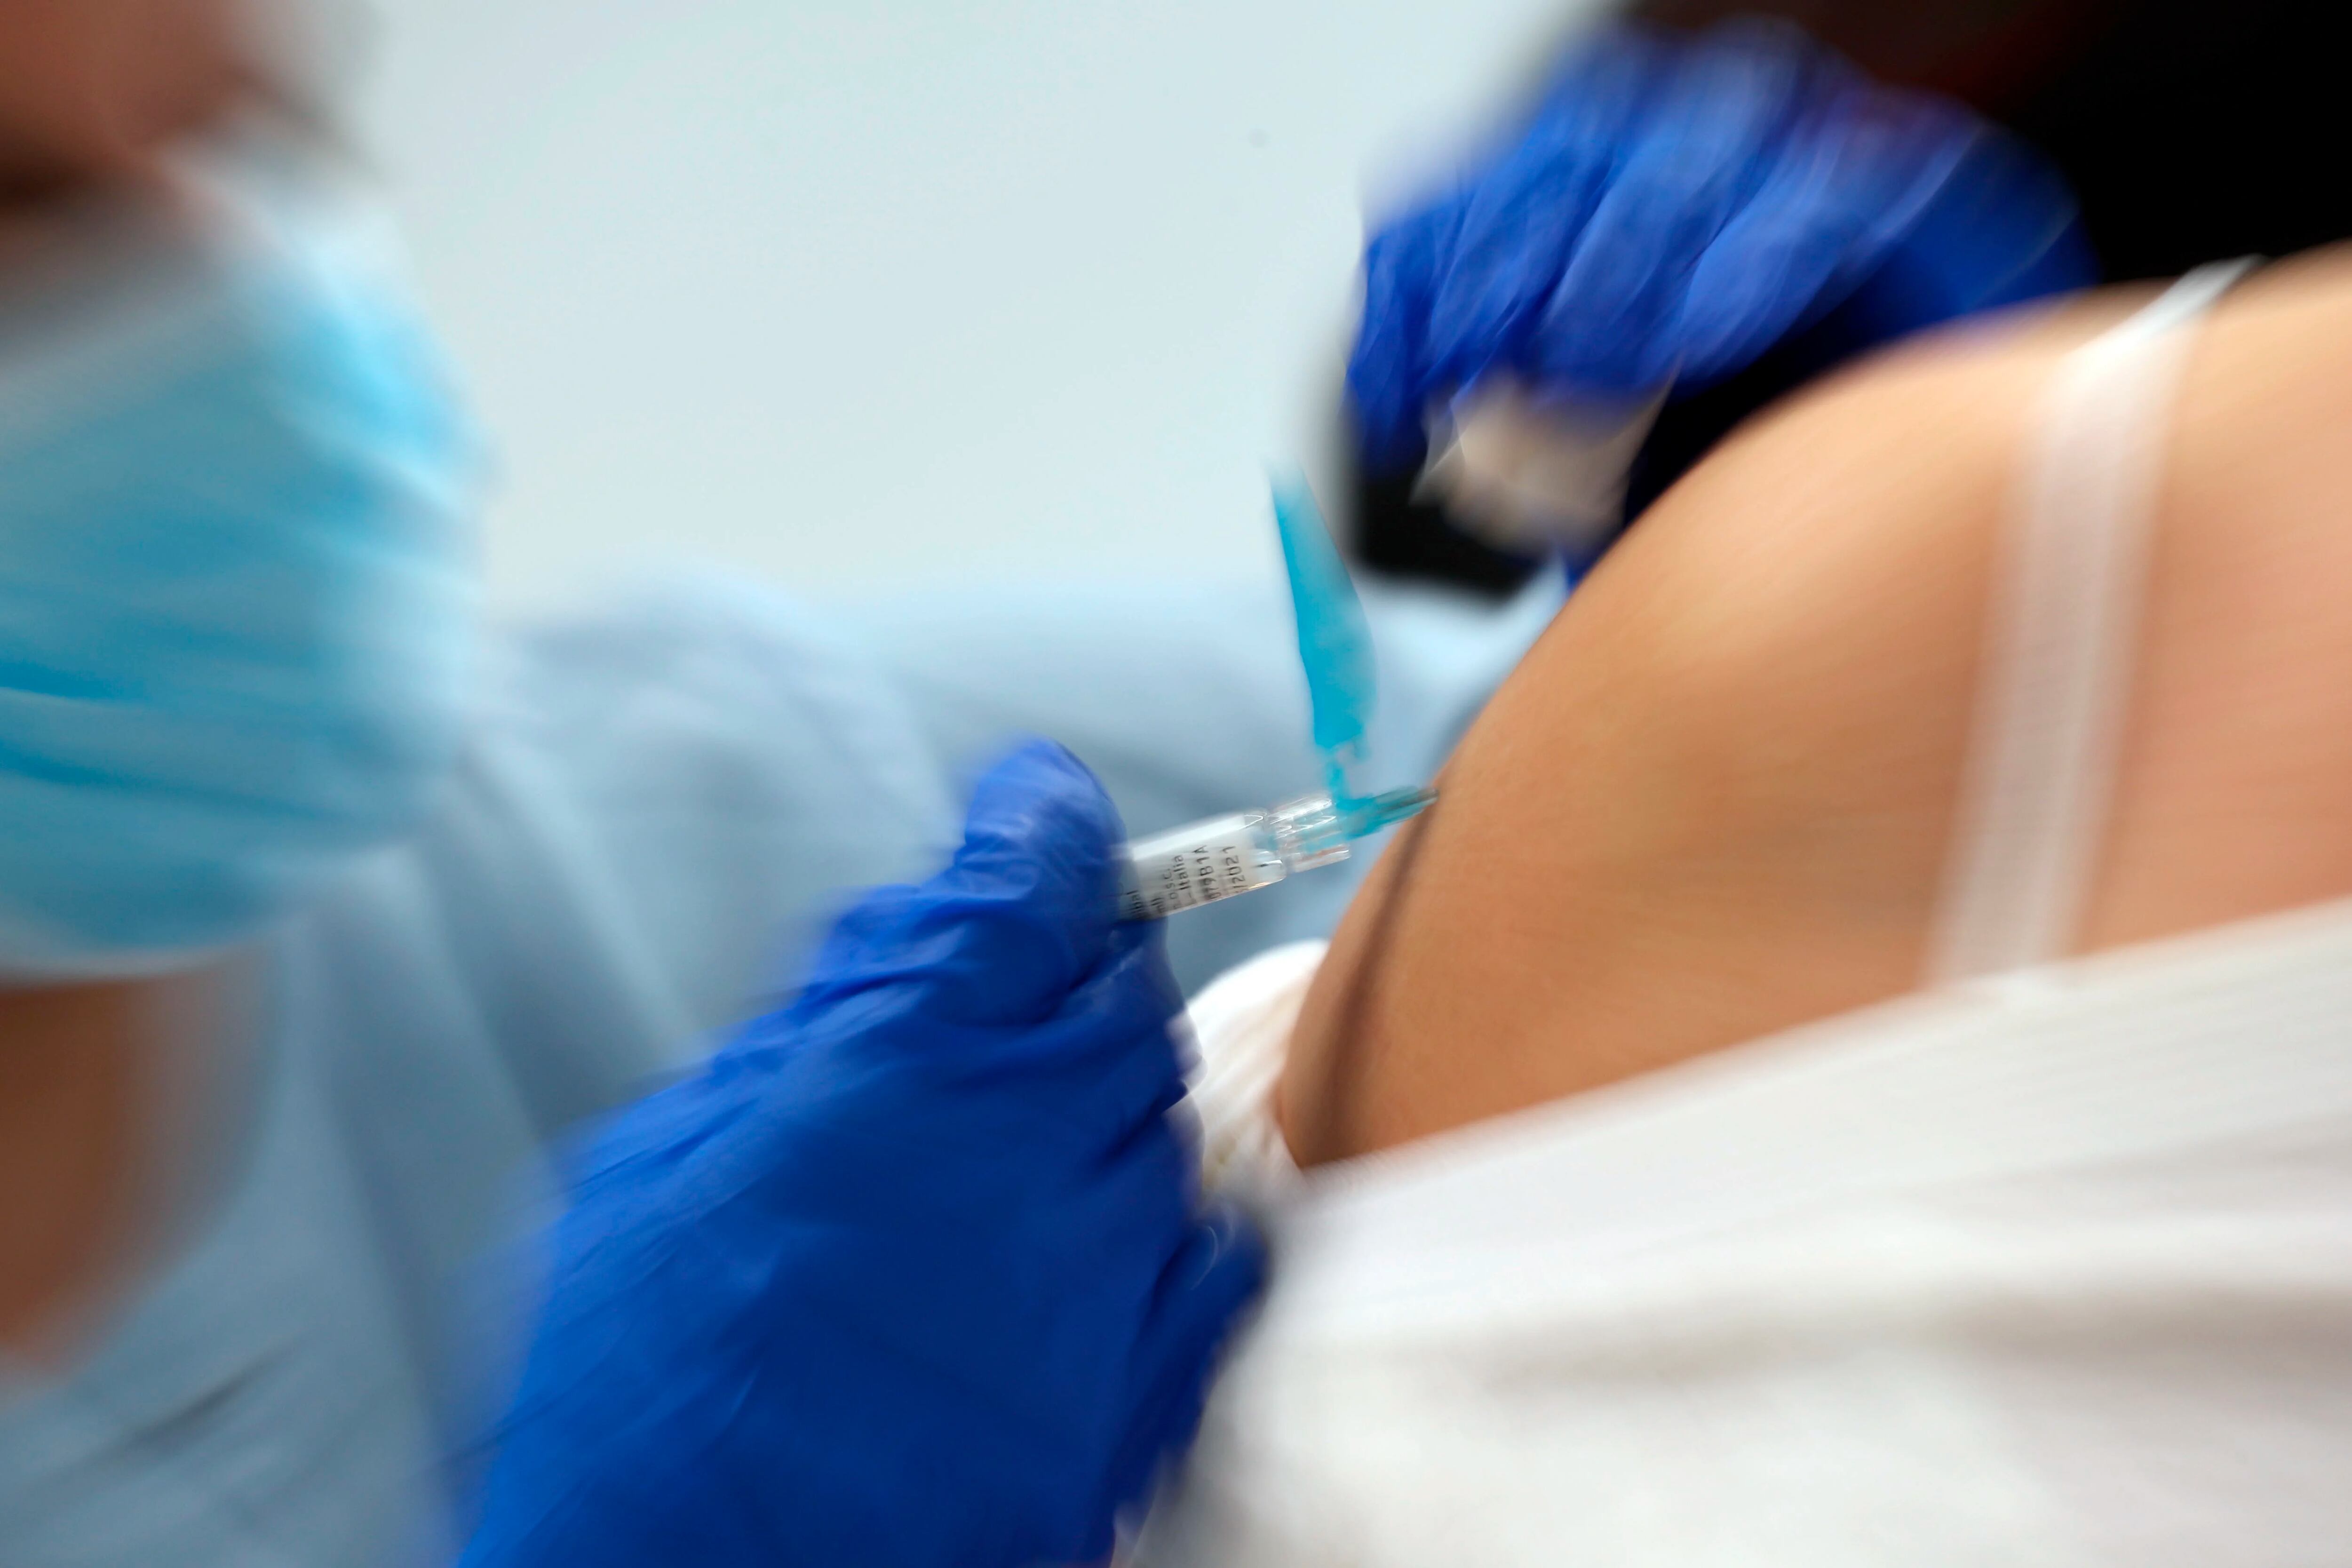 La vacunación contra la gripe en grupos de riesgo de complicaciones previene la mortalidad. Recomiendan aplicarse la dosis cuanto antes/ EFE/LUIS TEJIDO/ Archivo 